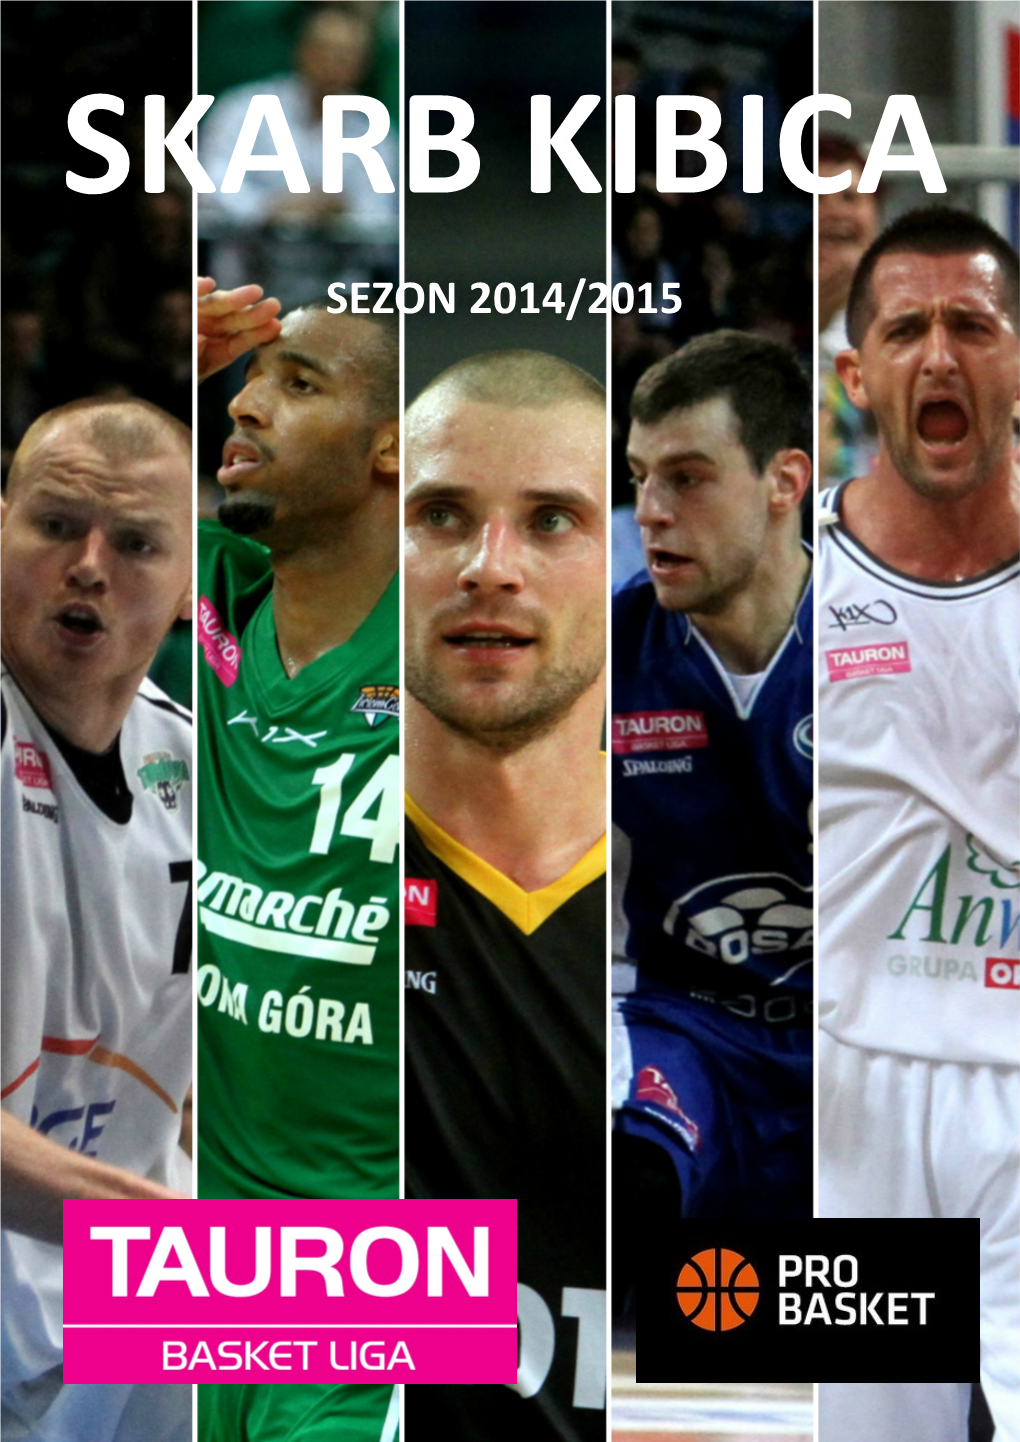 Sezon 2014/2015 Wraca Tauron Basket Liga